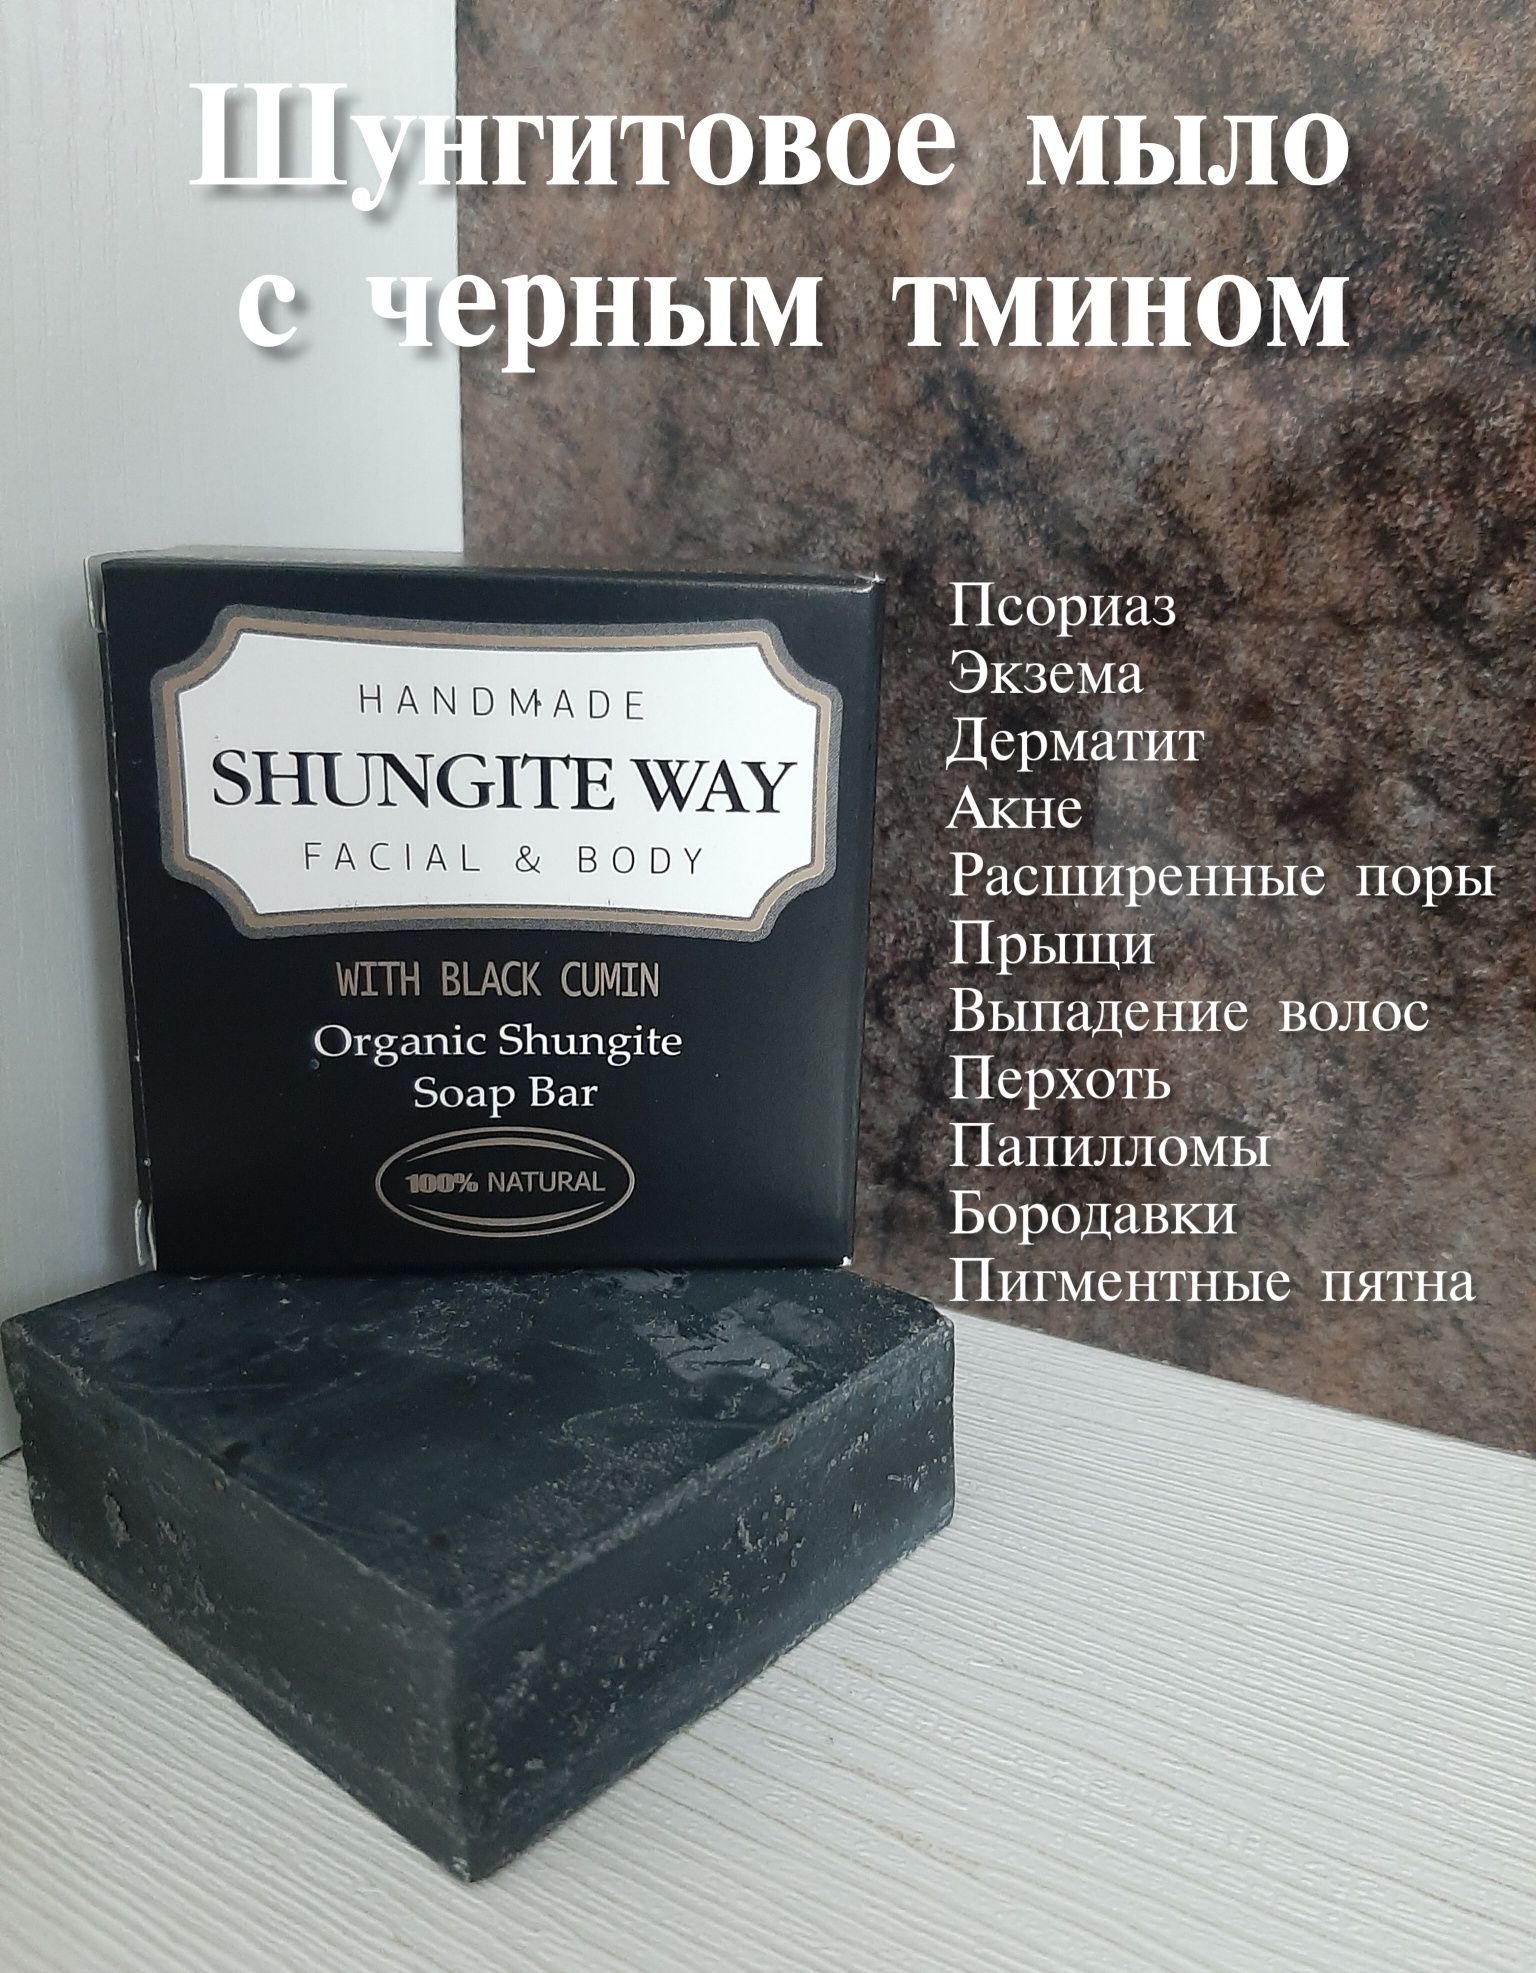 Шунгитовое-лечебные крема, мыло